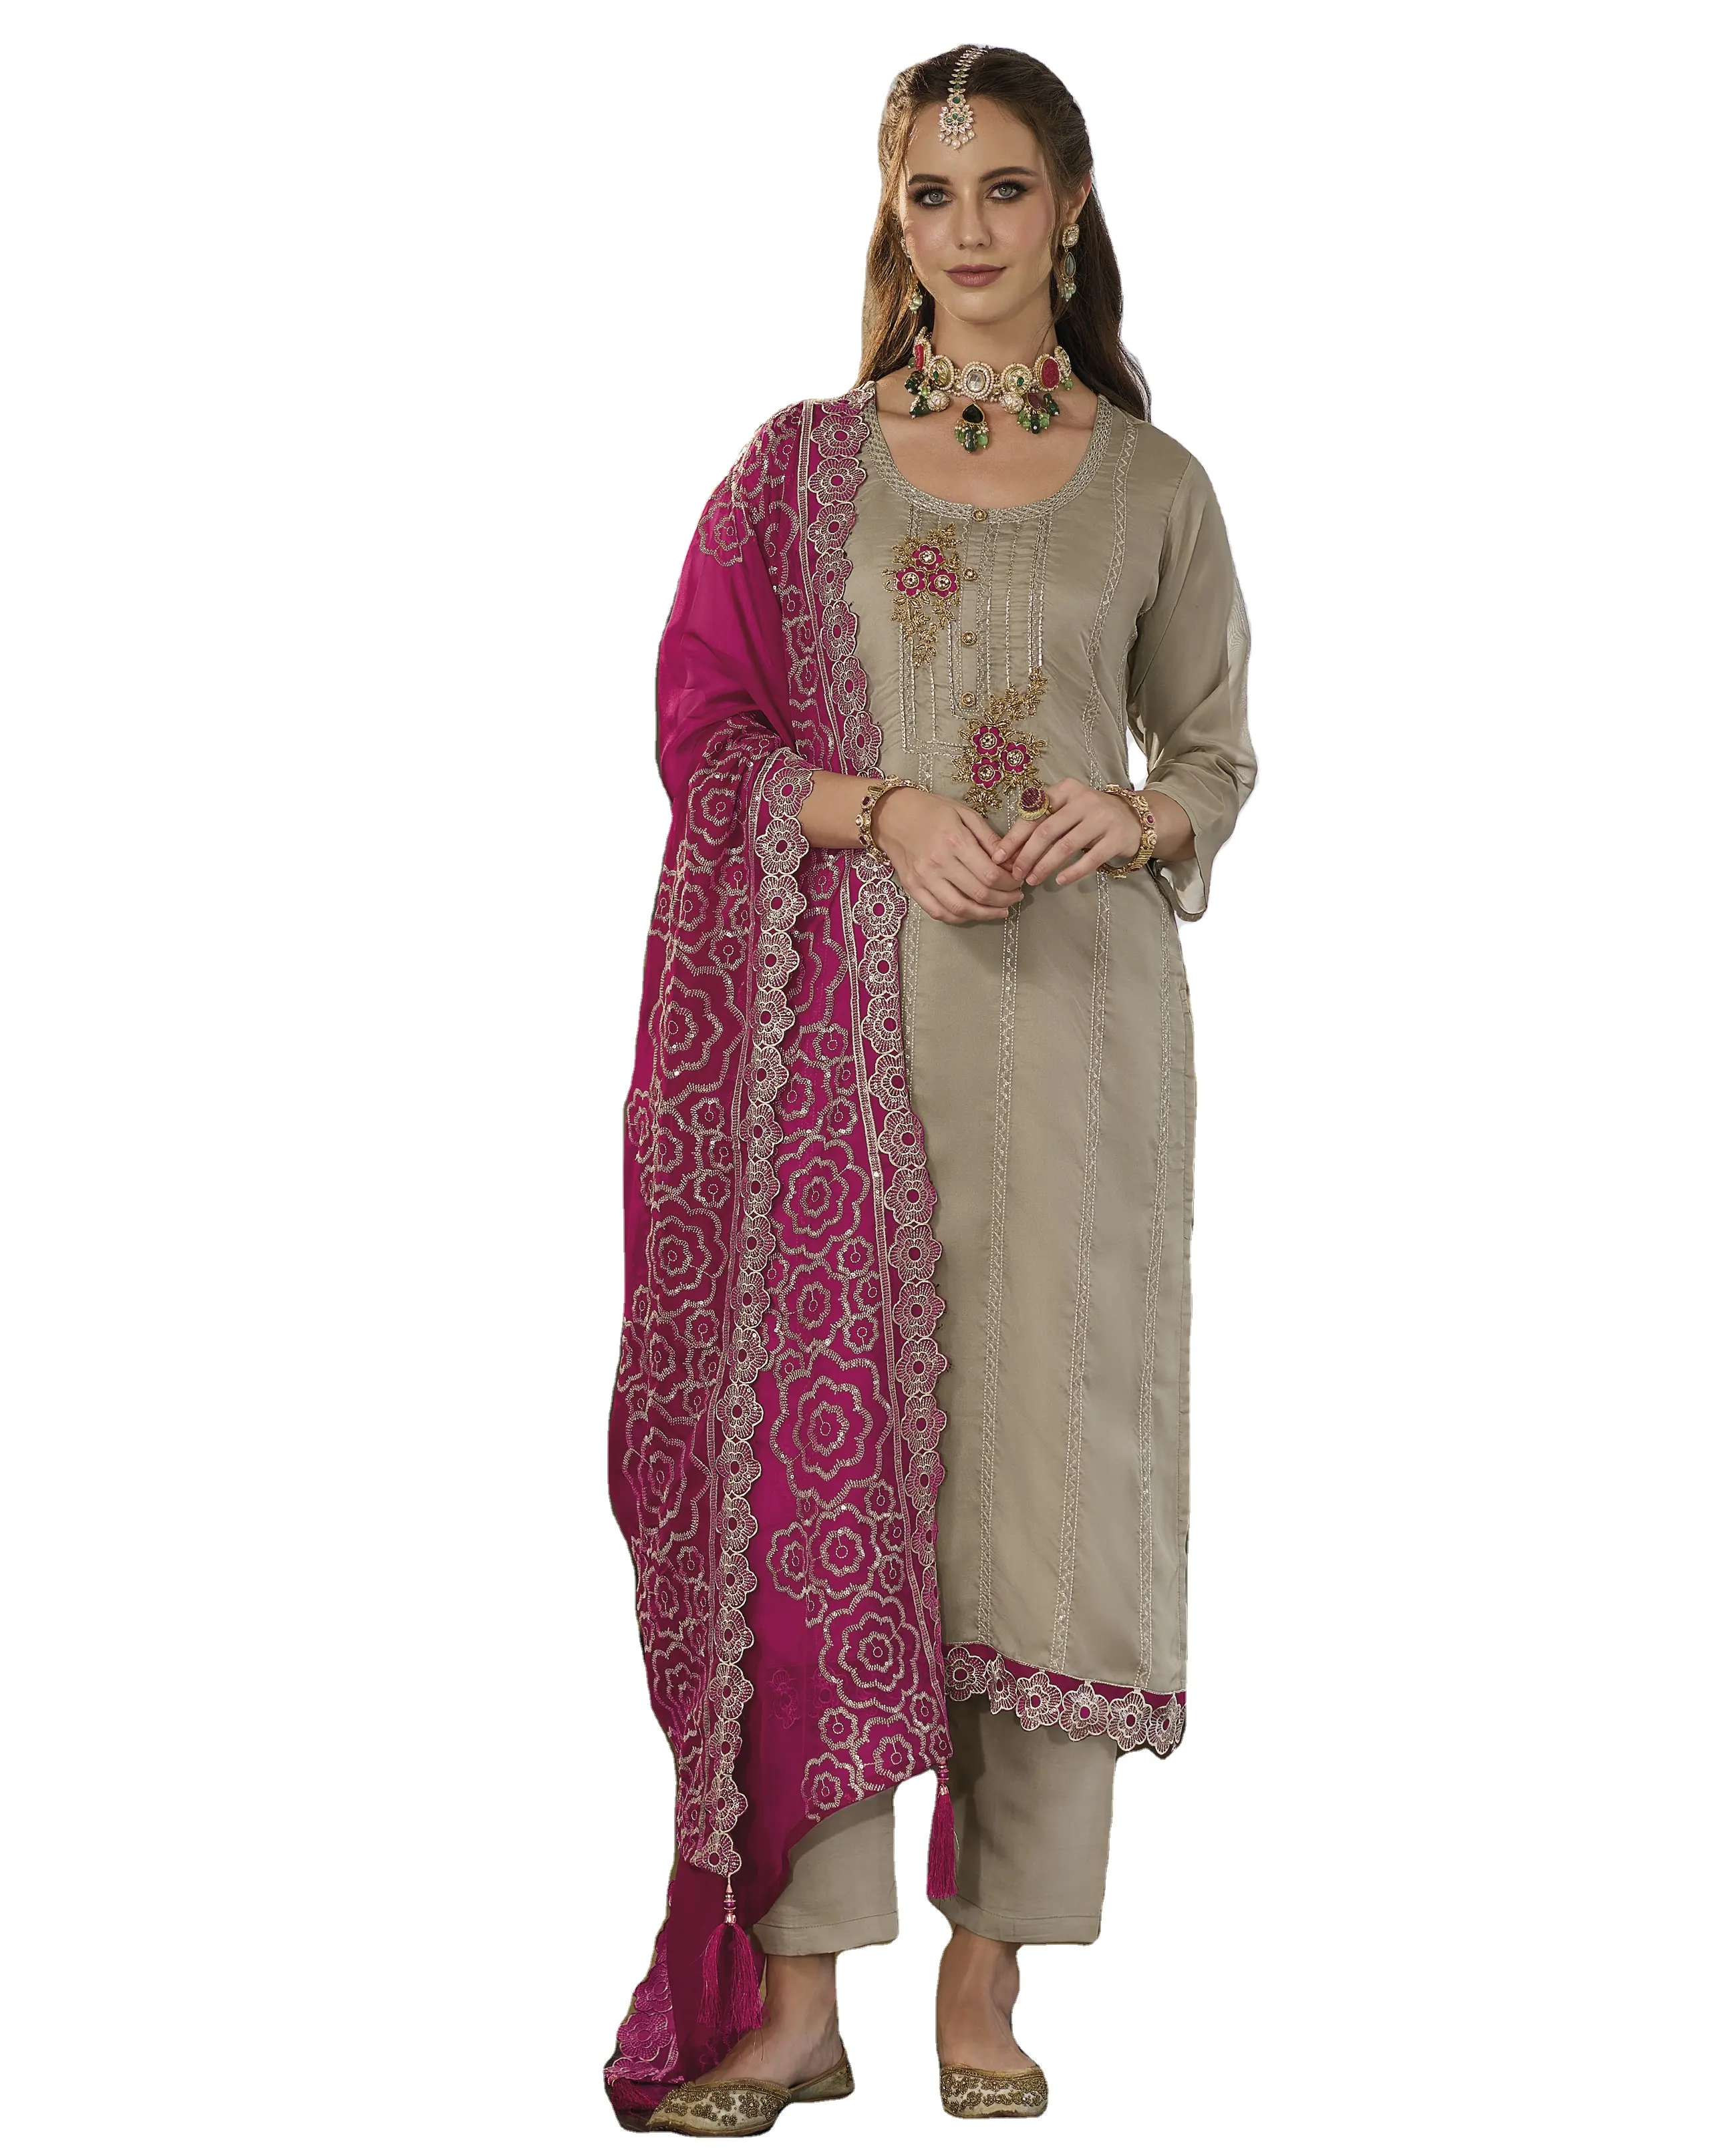 Look di classe ed elegante grazioso vendita calda Pakistani indiano Shalwar Kameez vestito da donna a prezzi di mercato accessibili